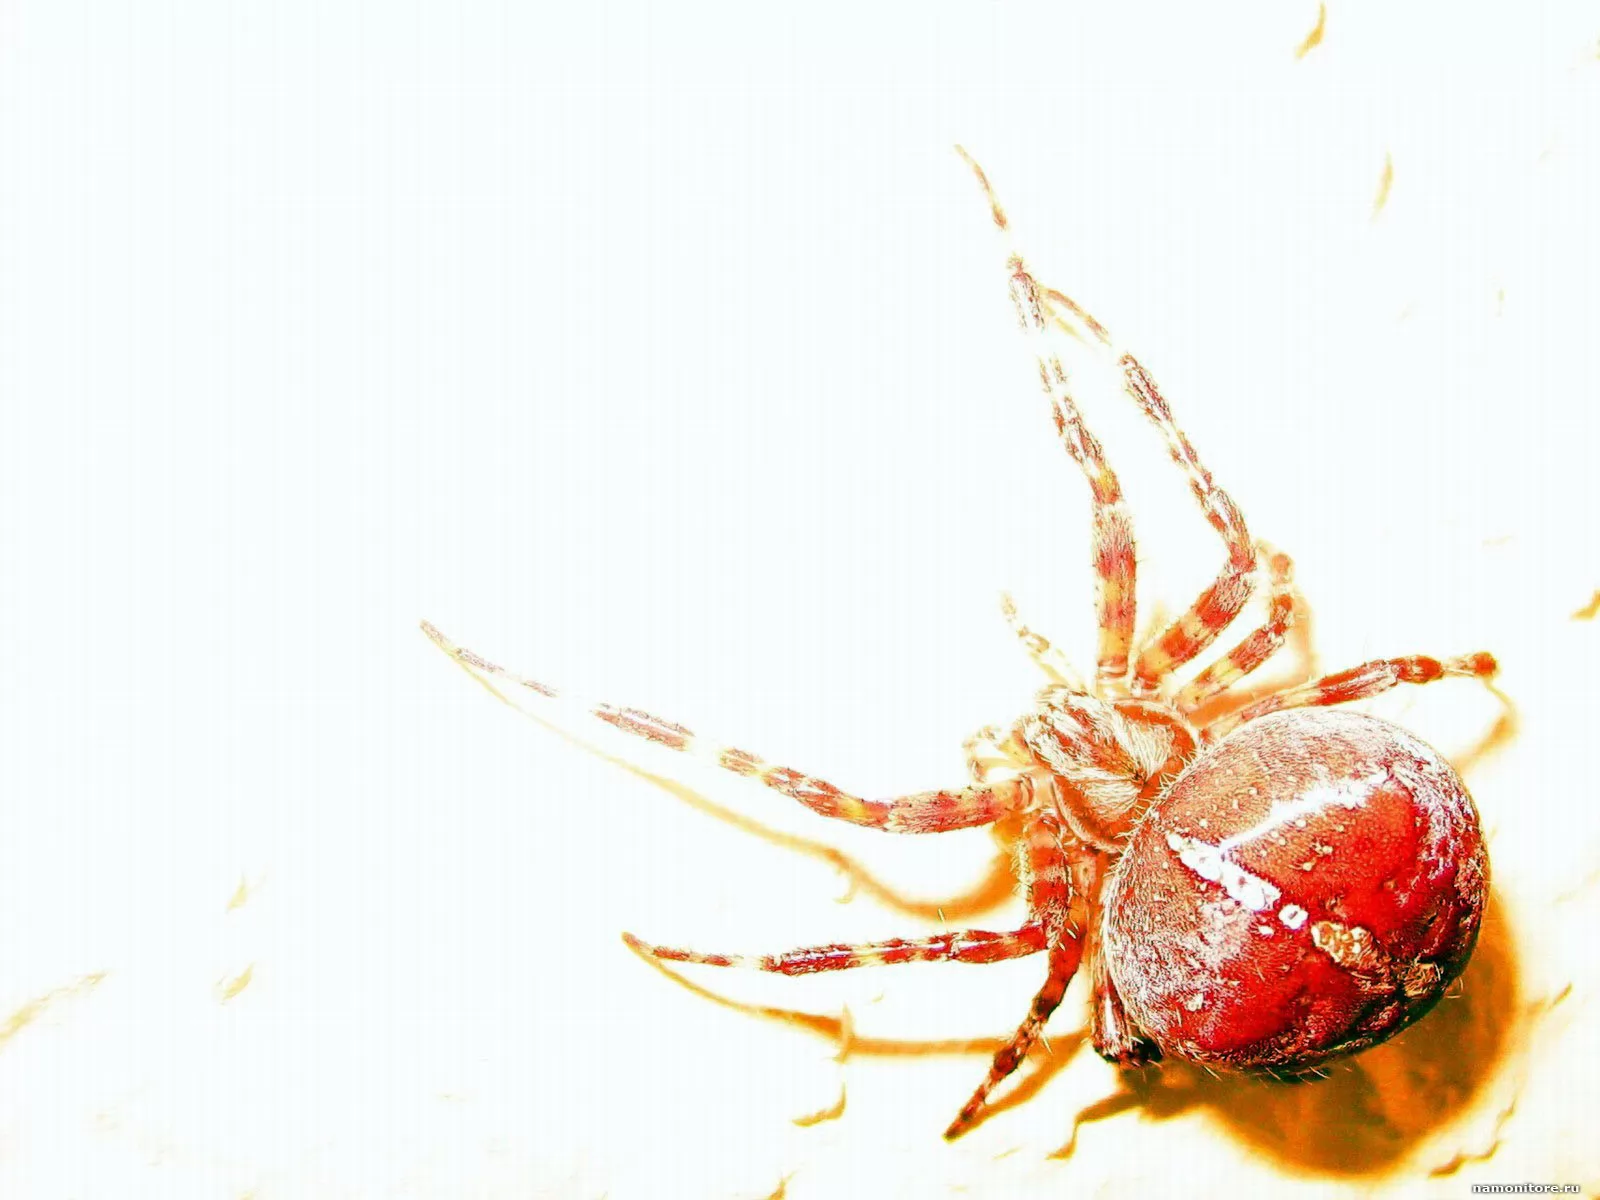 Ред спайдер. Красный паук. Краснотелый паук. Красно белый паук. Красный паук с белой попой.